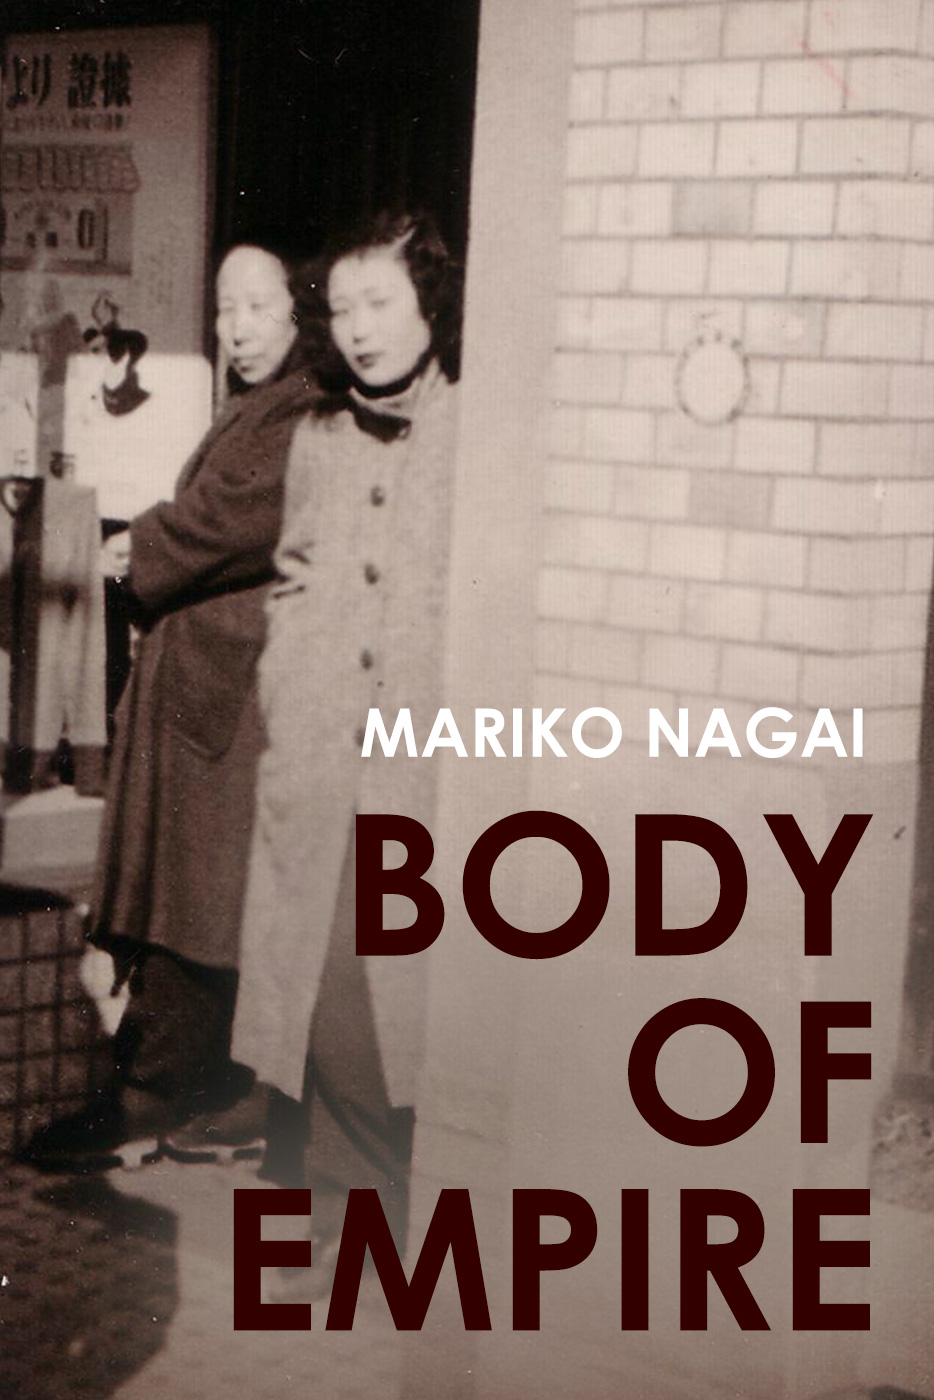 Mariko Nagai's 